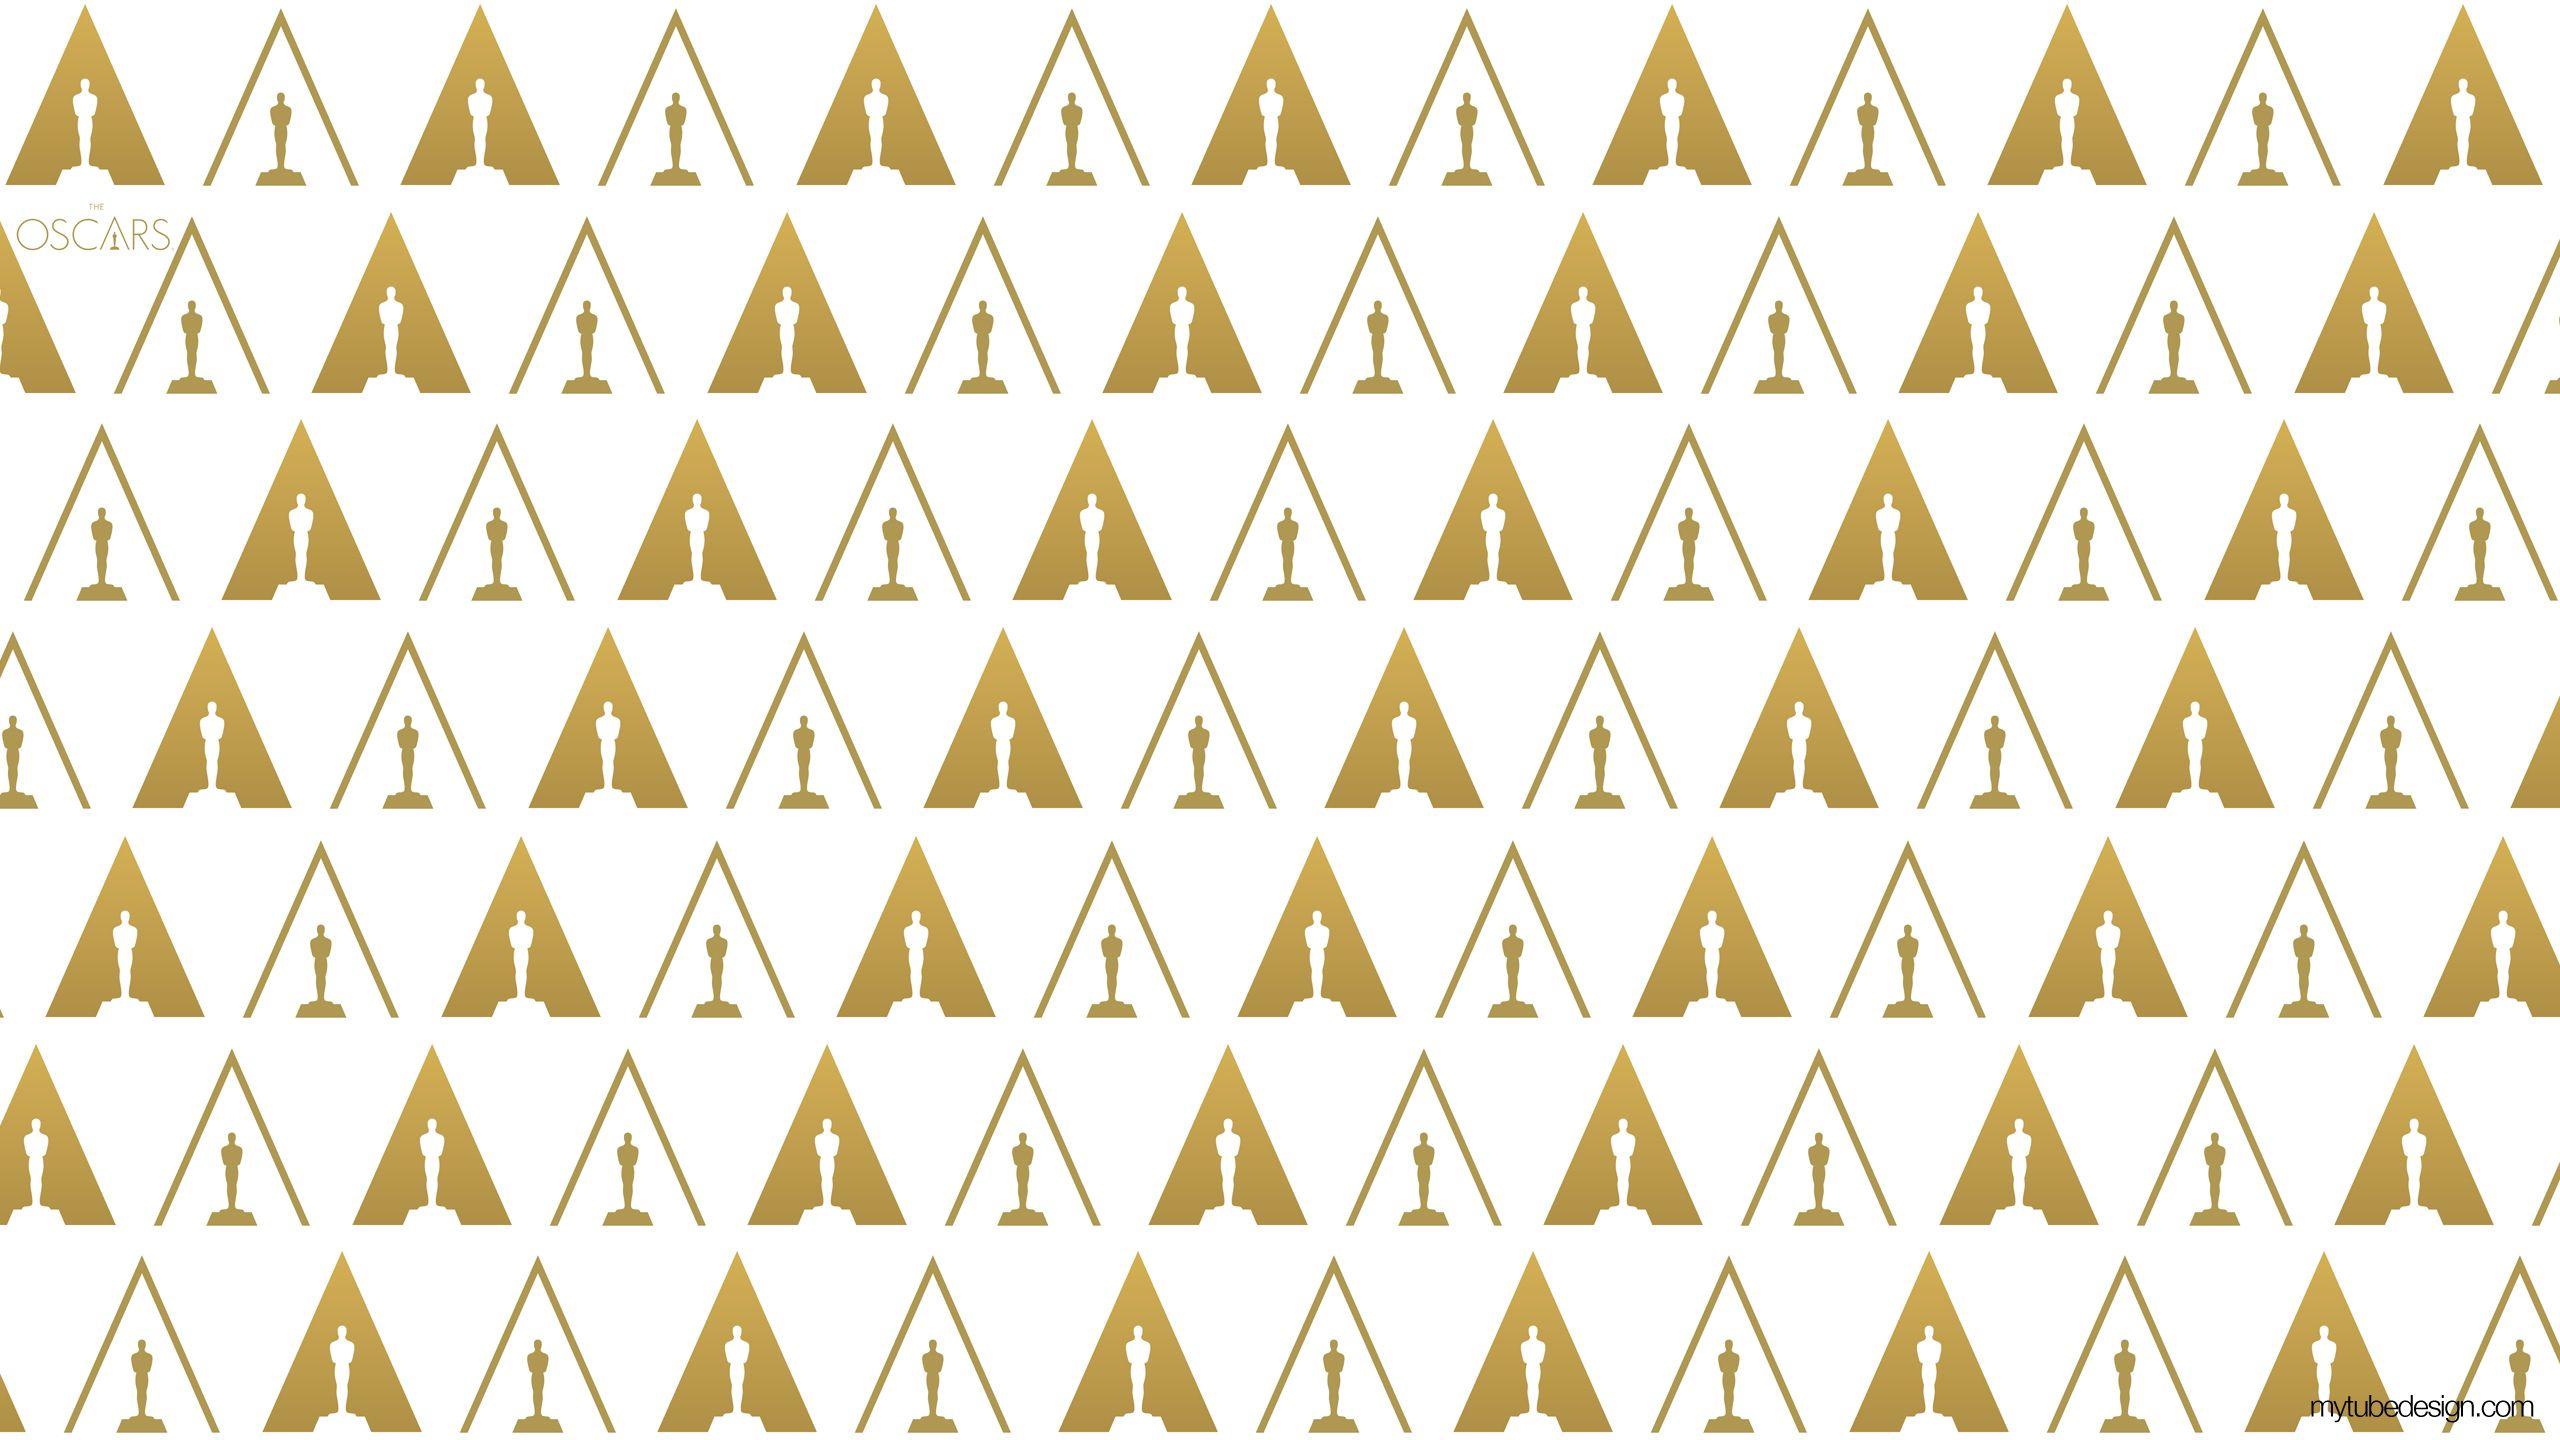 The Oscars. MyTubeDesign Wallpaper. YouTube Facebook Twitter